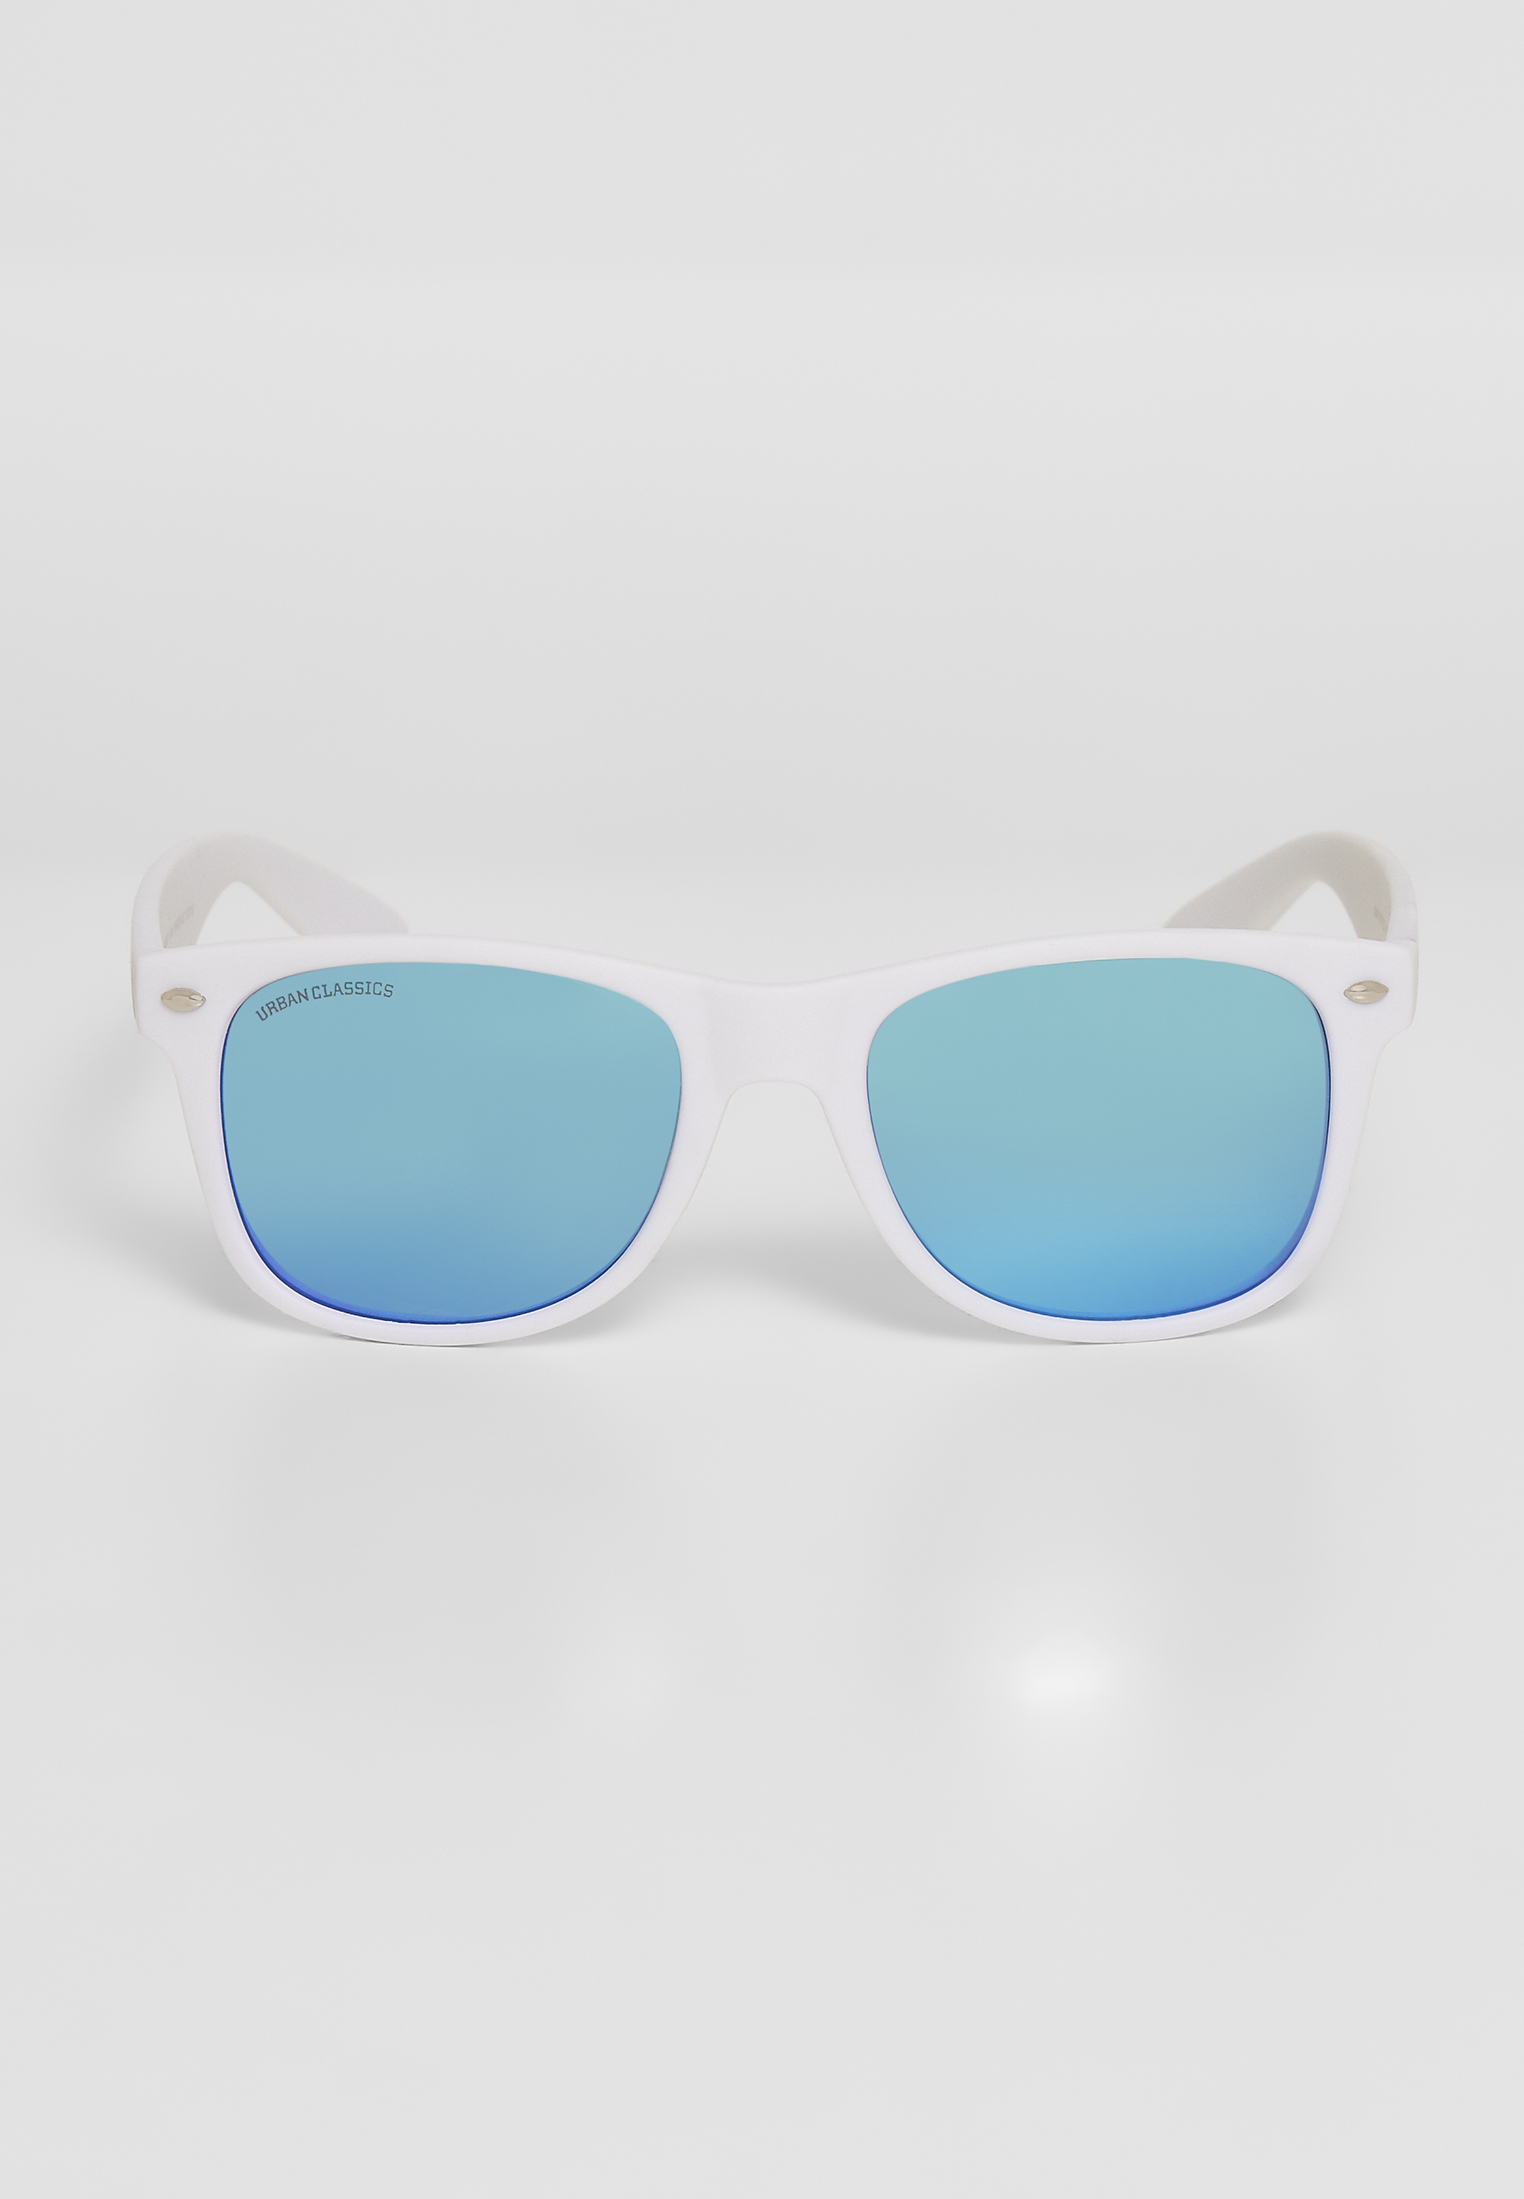 Sonnenbrillen Sunglasses Likoma Mirror UC in Farbe wht/blu